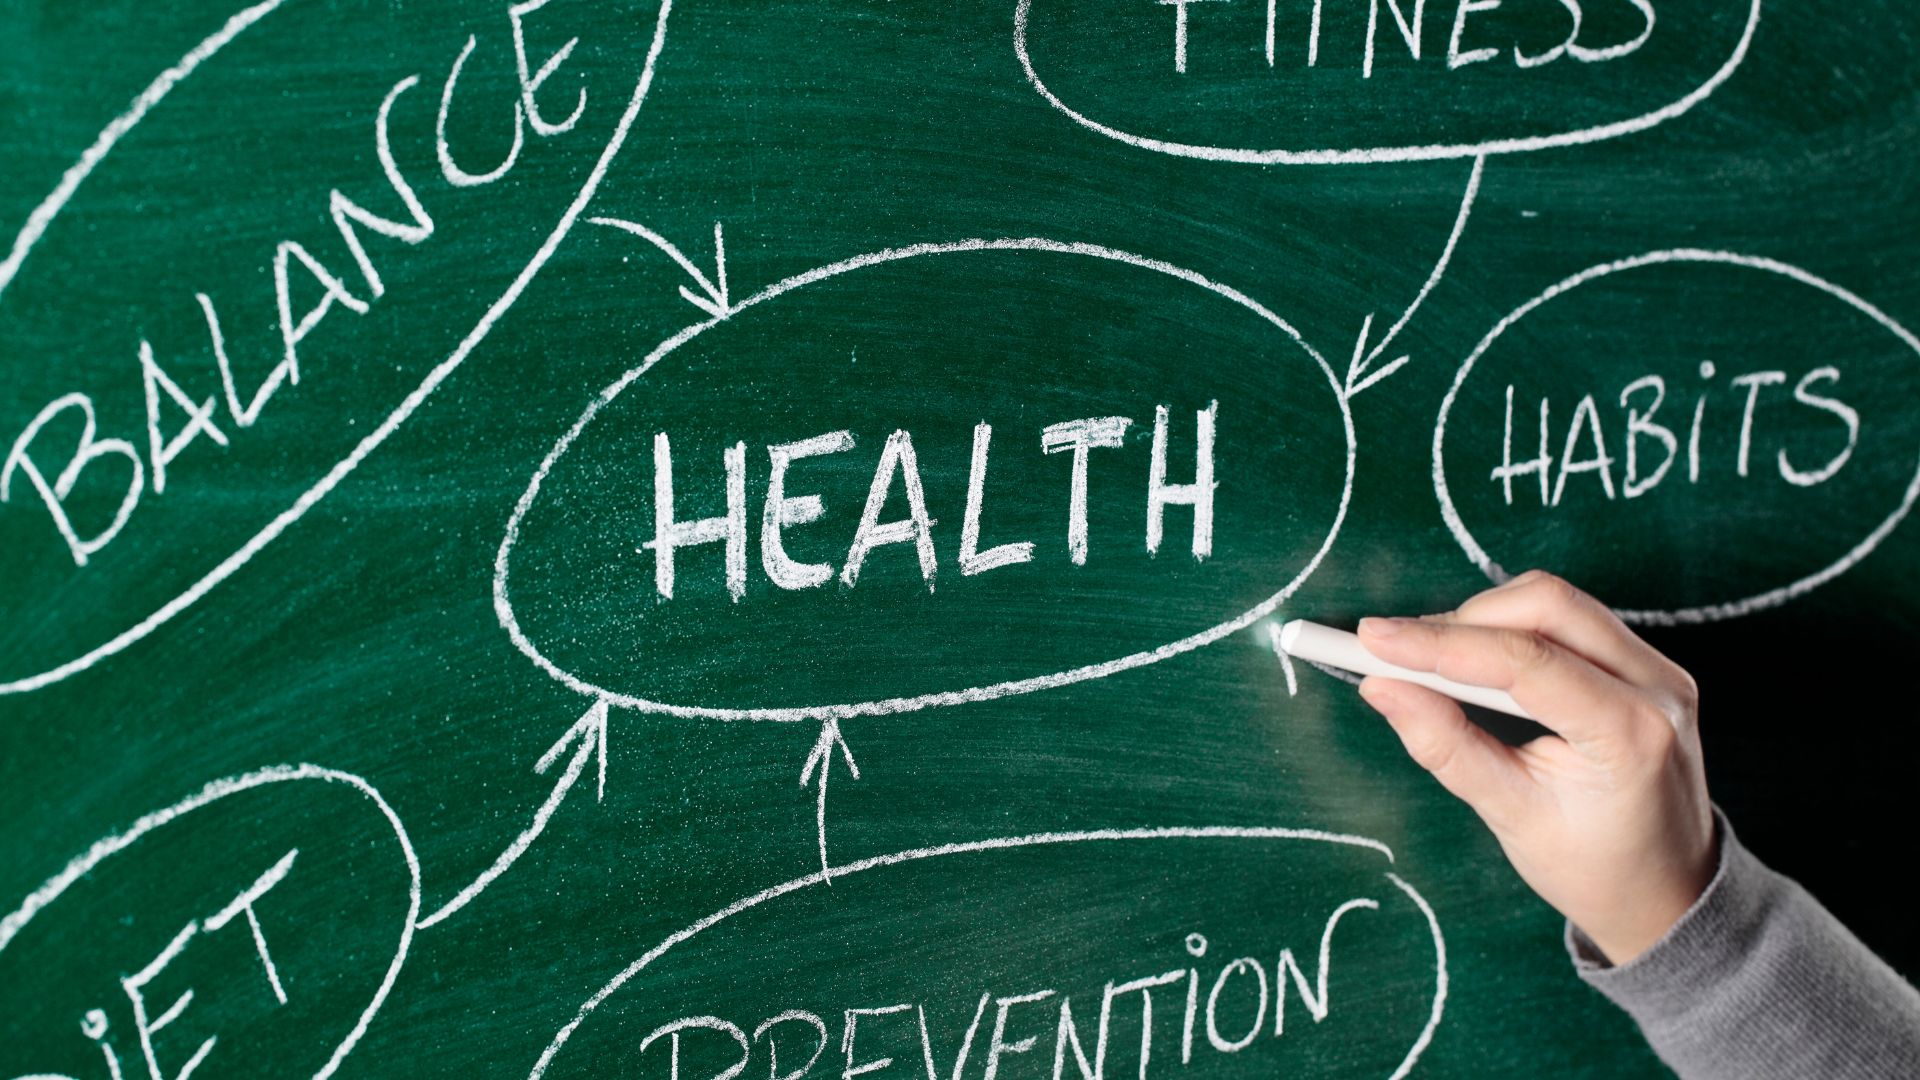 Profilaktyka zdrowotna została opisana kredą na szkolnej tablicy za pomocą głównych czynników wpływających na zdrowie.